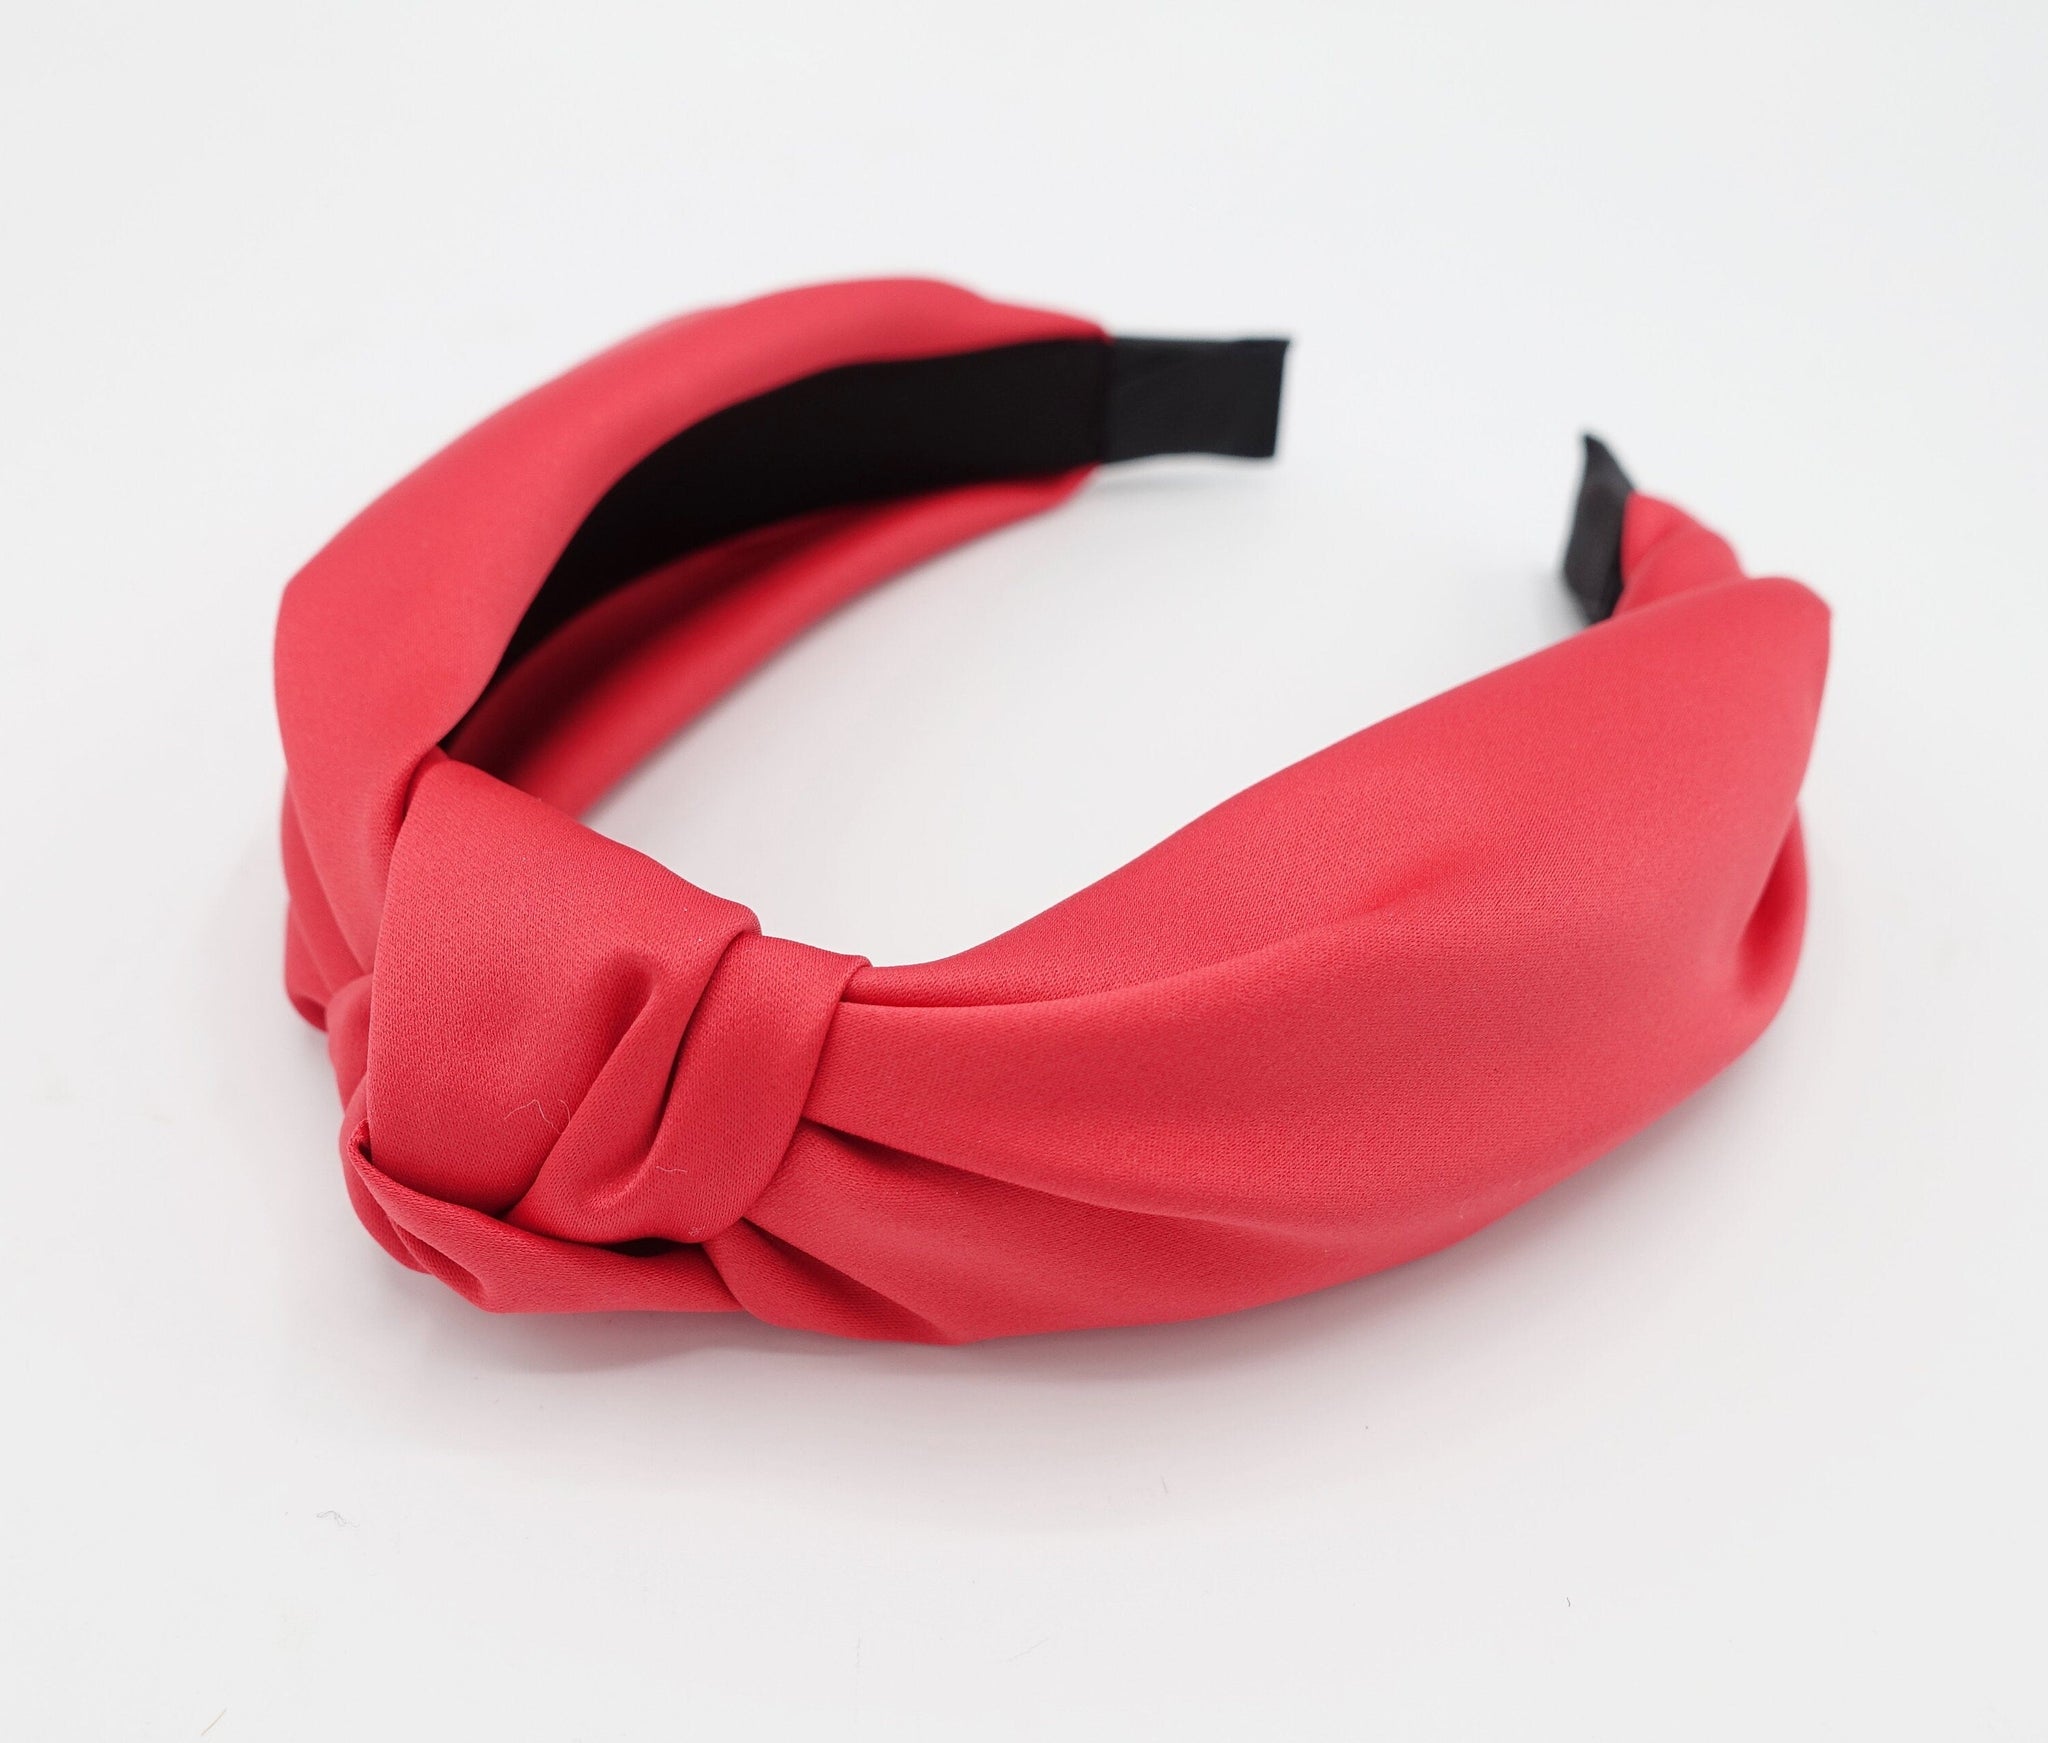 veryshine.com Headband Red glossy satin knot headband solid top knot hairband women hair accessory